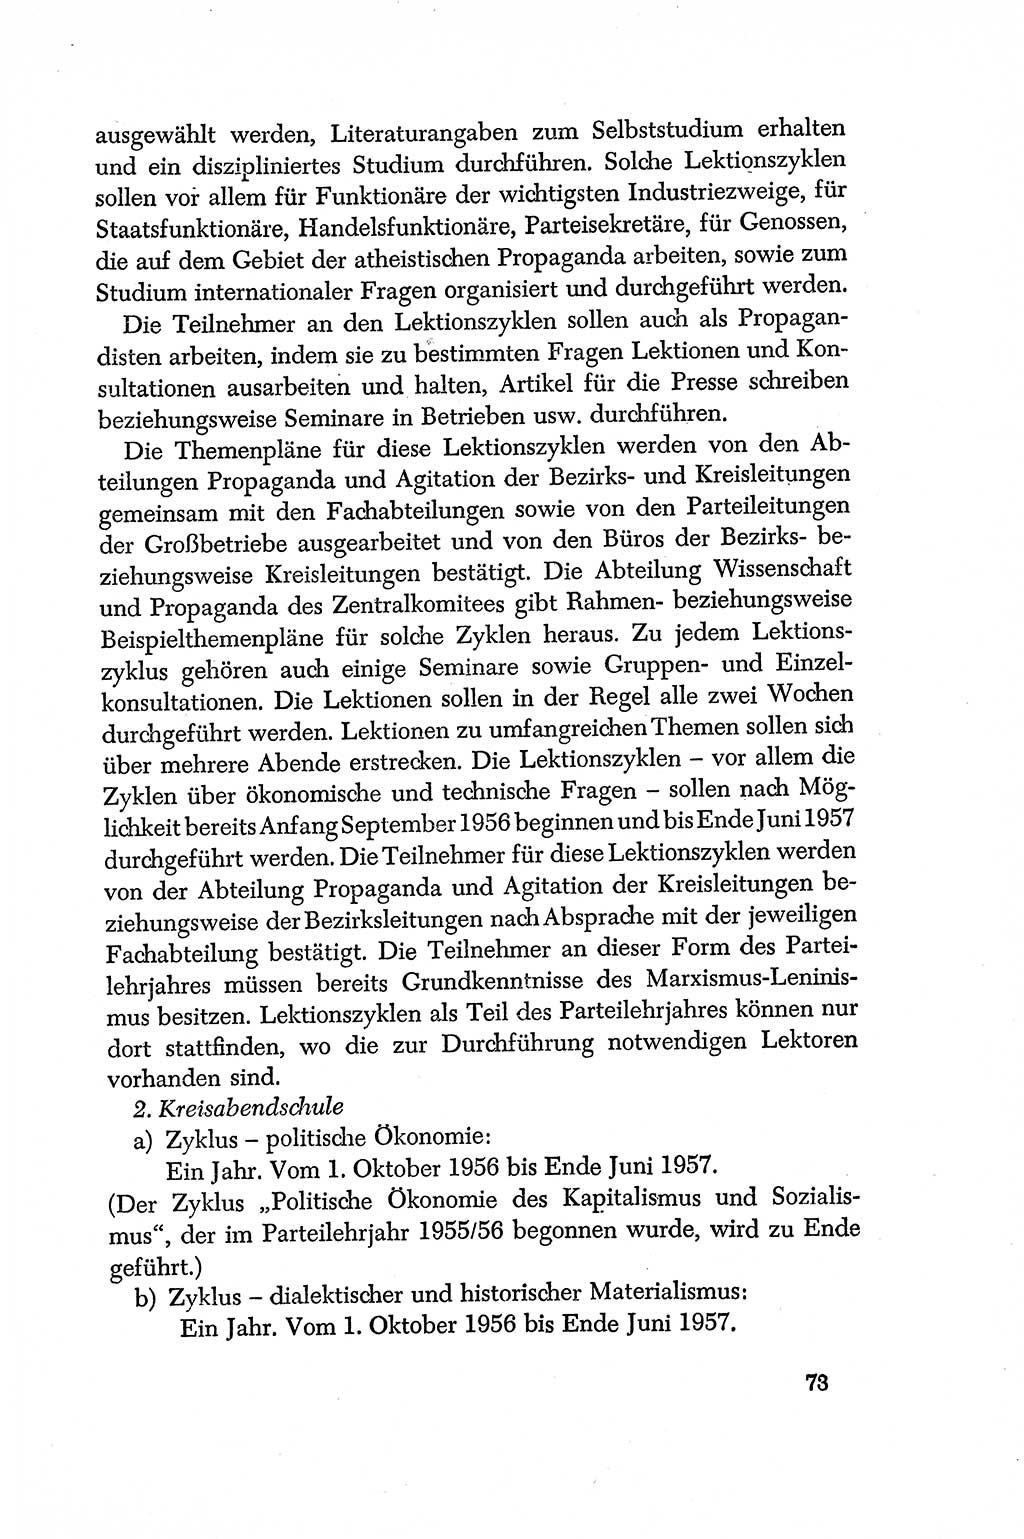 Dokumente der Sozialistischen Einheitspartei Deutschlands (SED) [Deutsche Demokratische Republik (DDR)] 1956-1957, Seite 73 (Dok. SED DDR 1956-1957, S. 73)